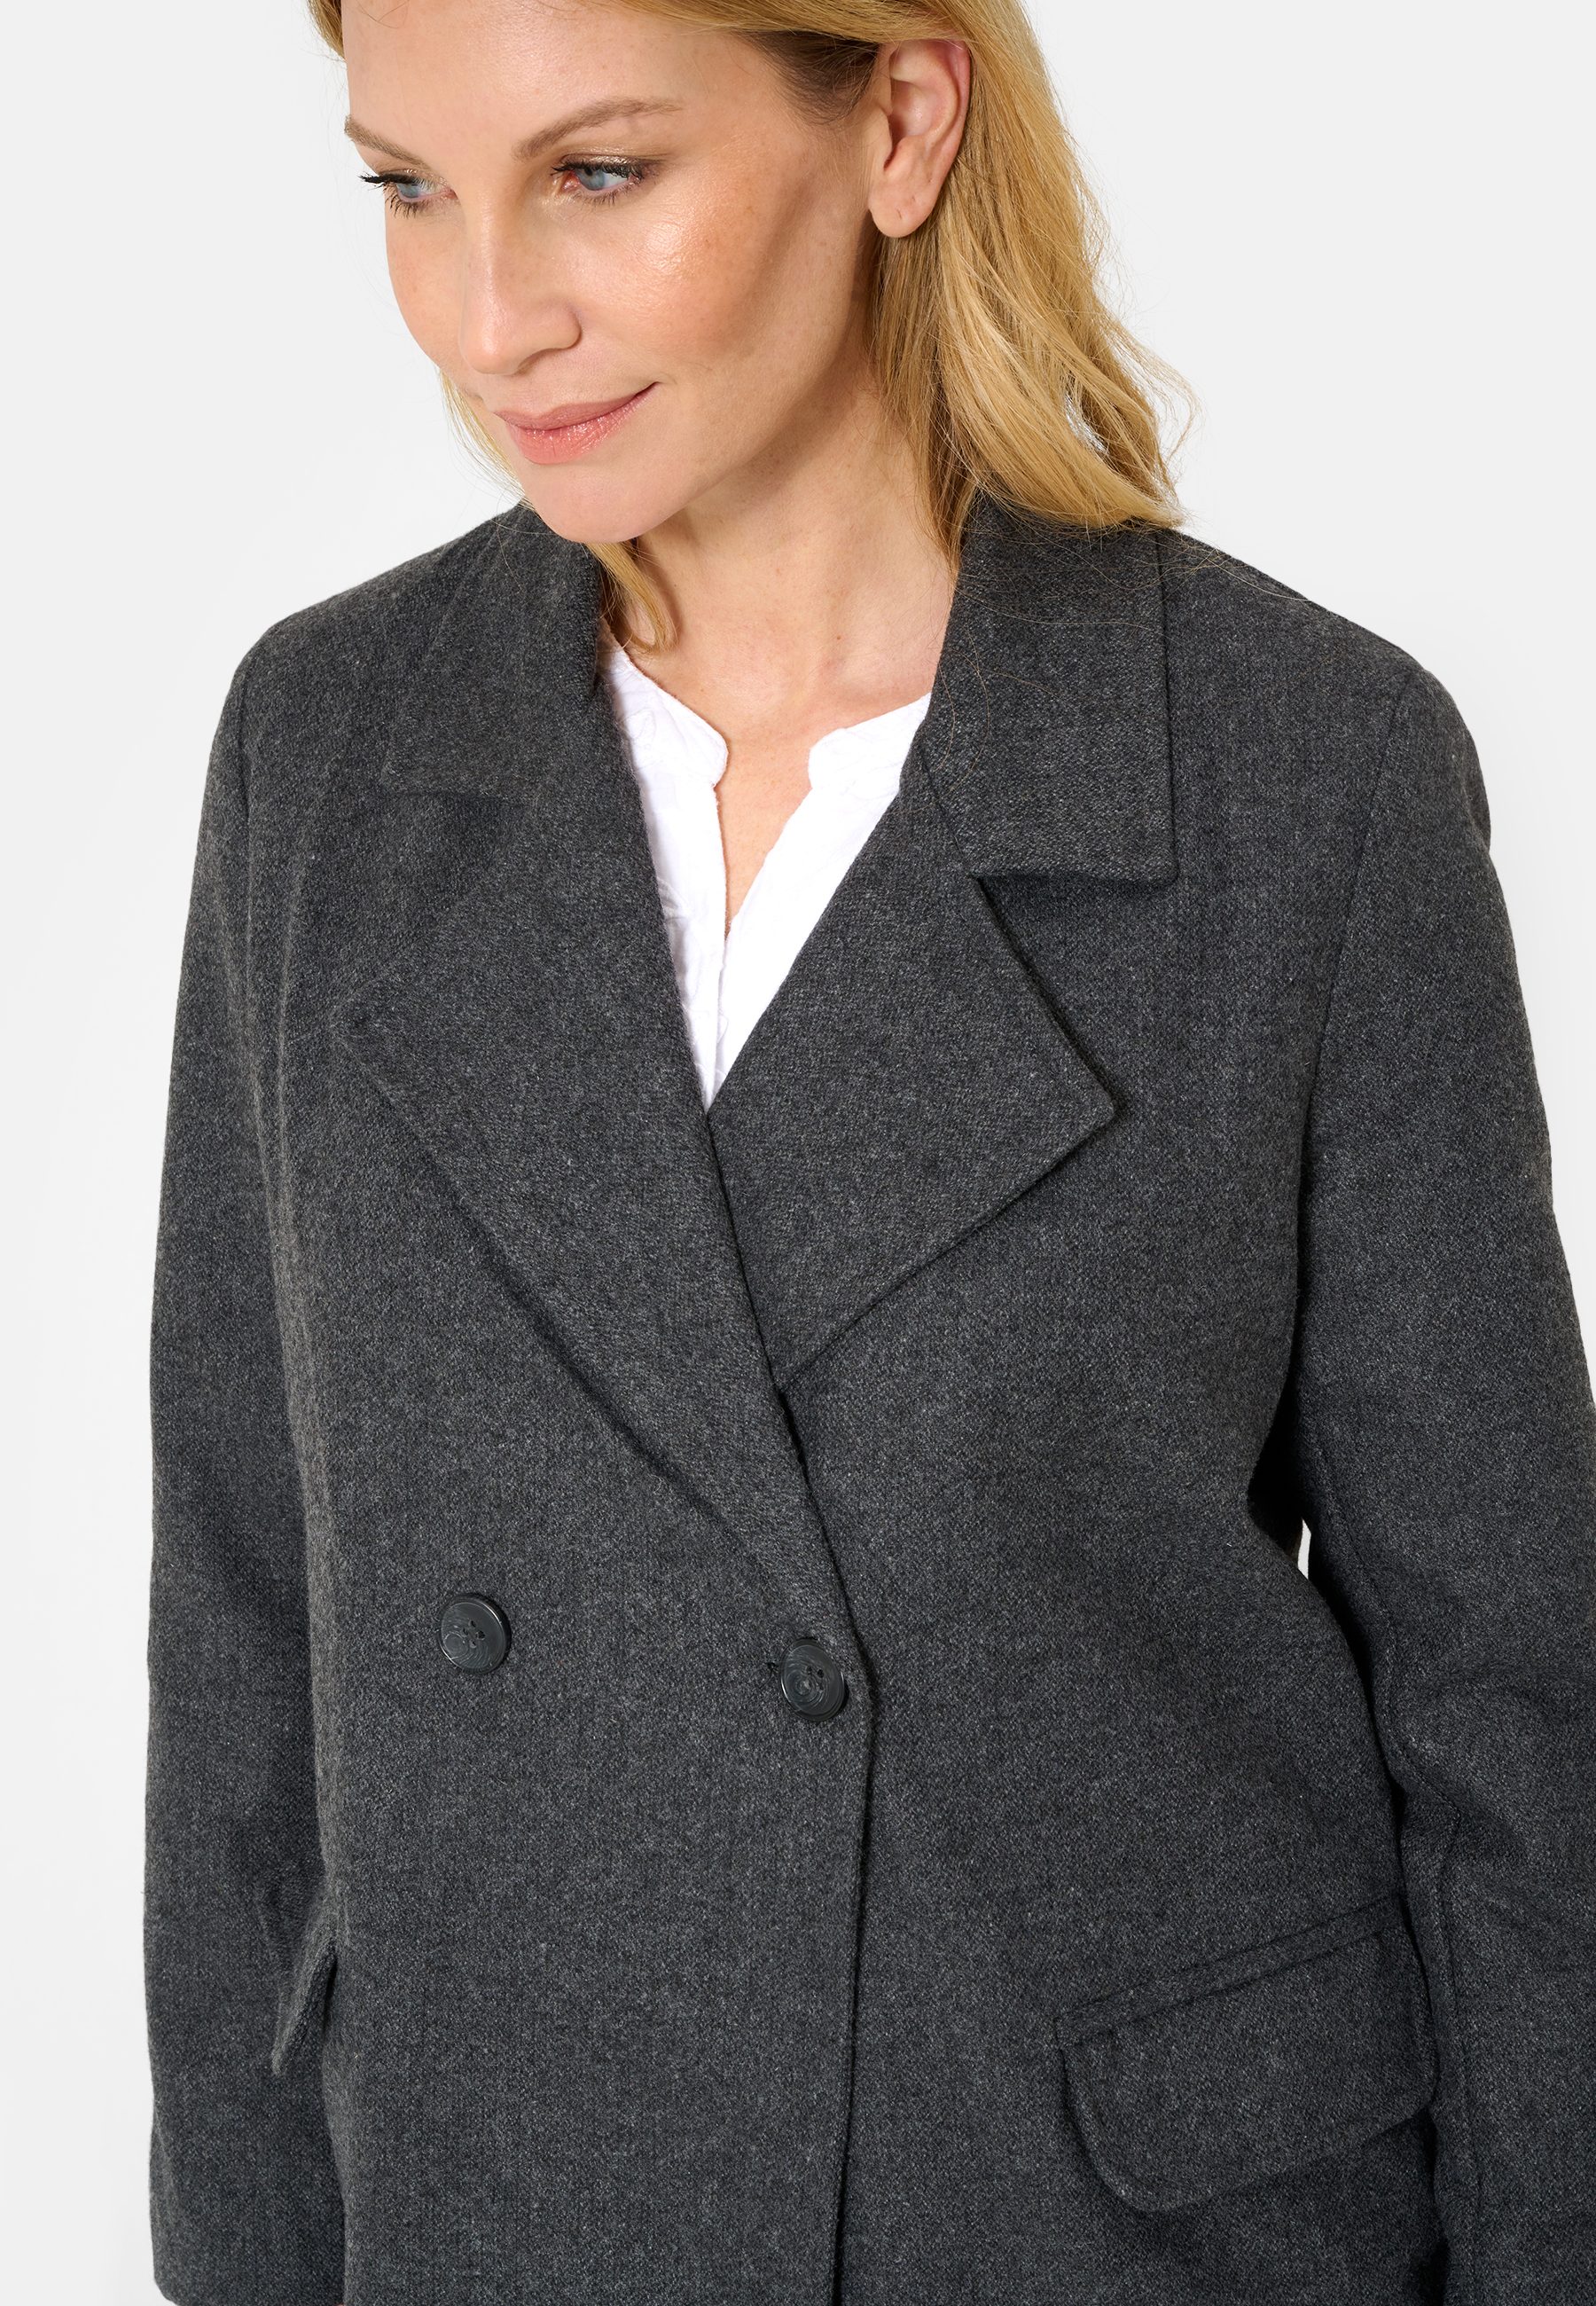 Damen Textil Mantel Alberta in Grau von Ricano, Detailansich 2 Knöpfe Knopfverschluss, Zwei Seitentaschen mit Klappen, Reversekragen mit V-Ausschnitt geschlossen